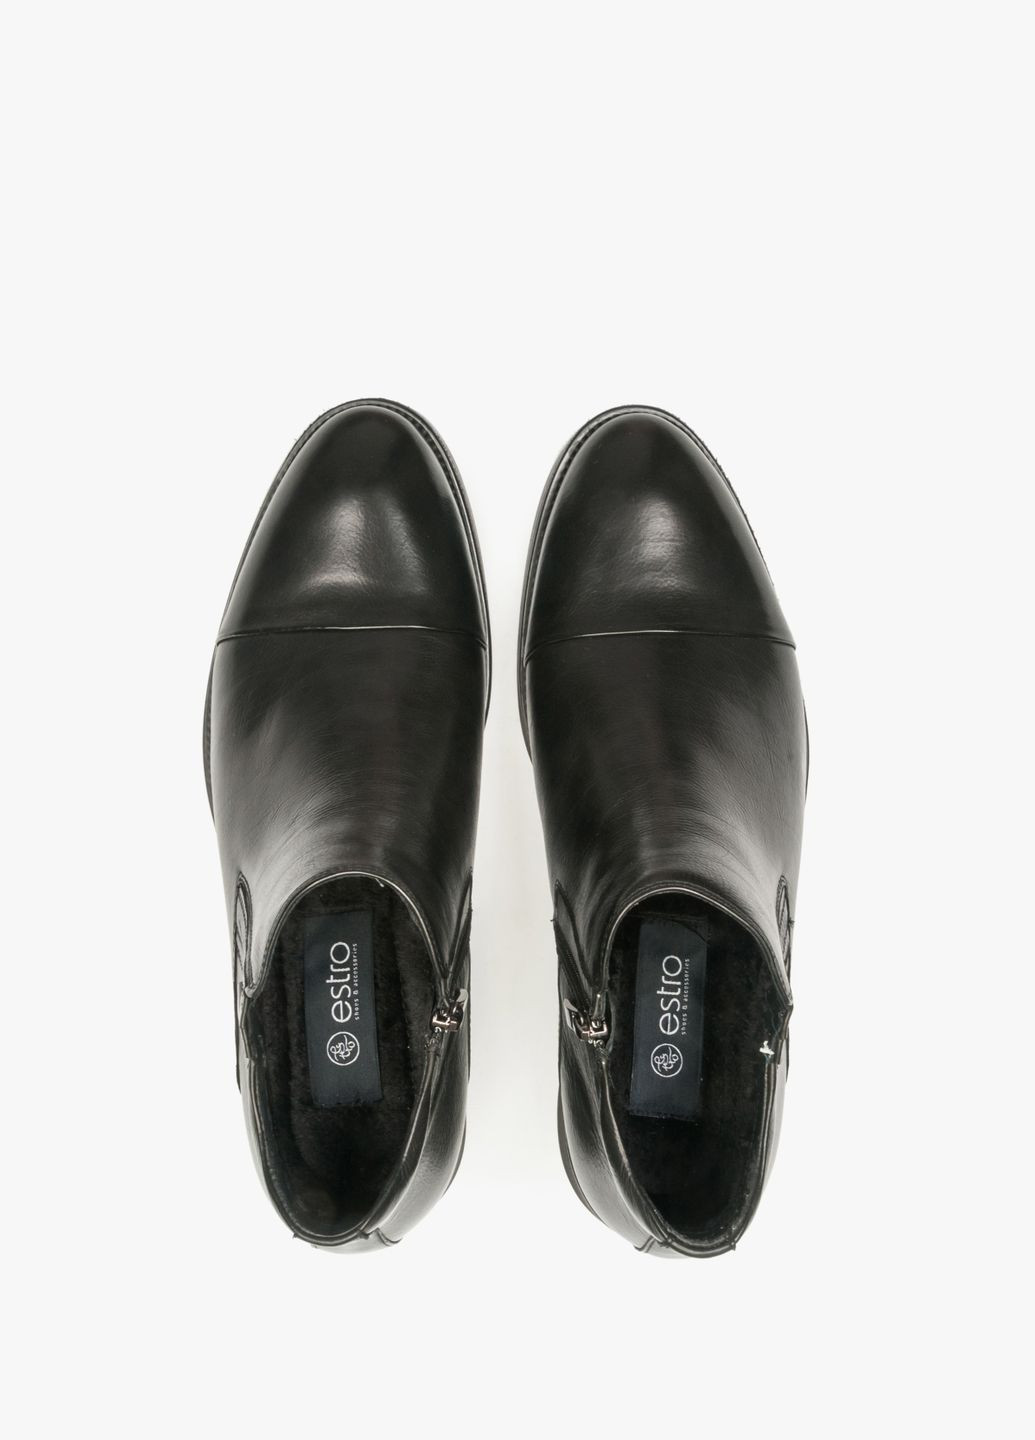 Черные осенние ботинки, цвет черный Estro